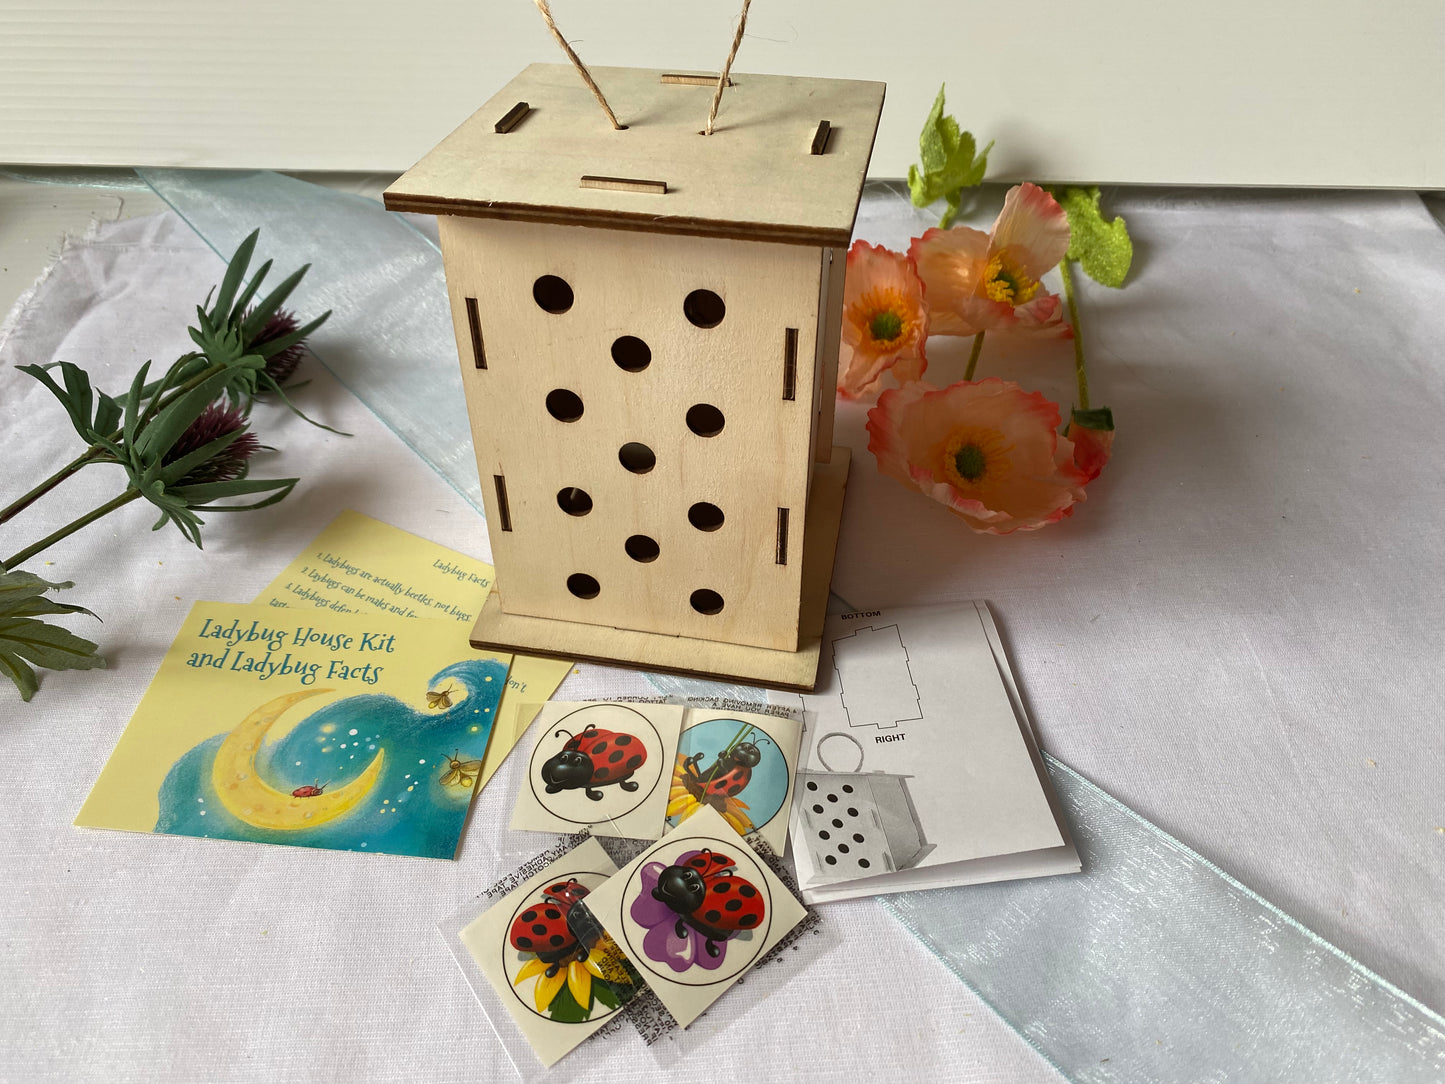 Ladybug House Kit